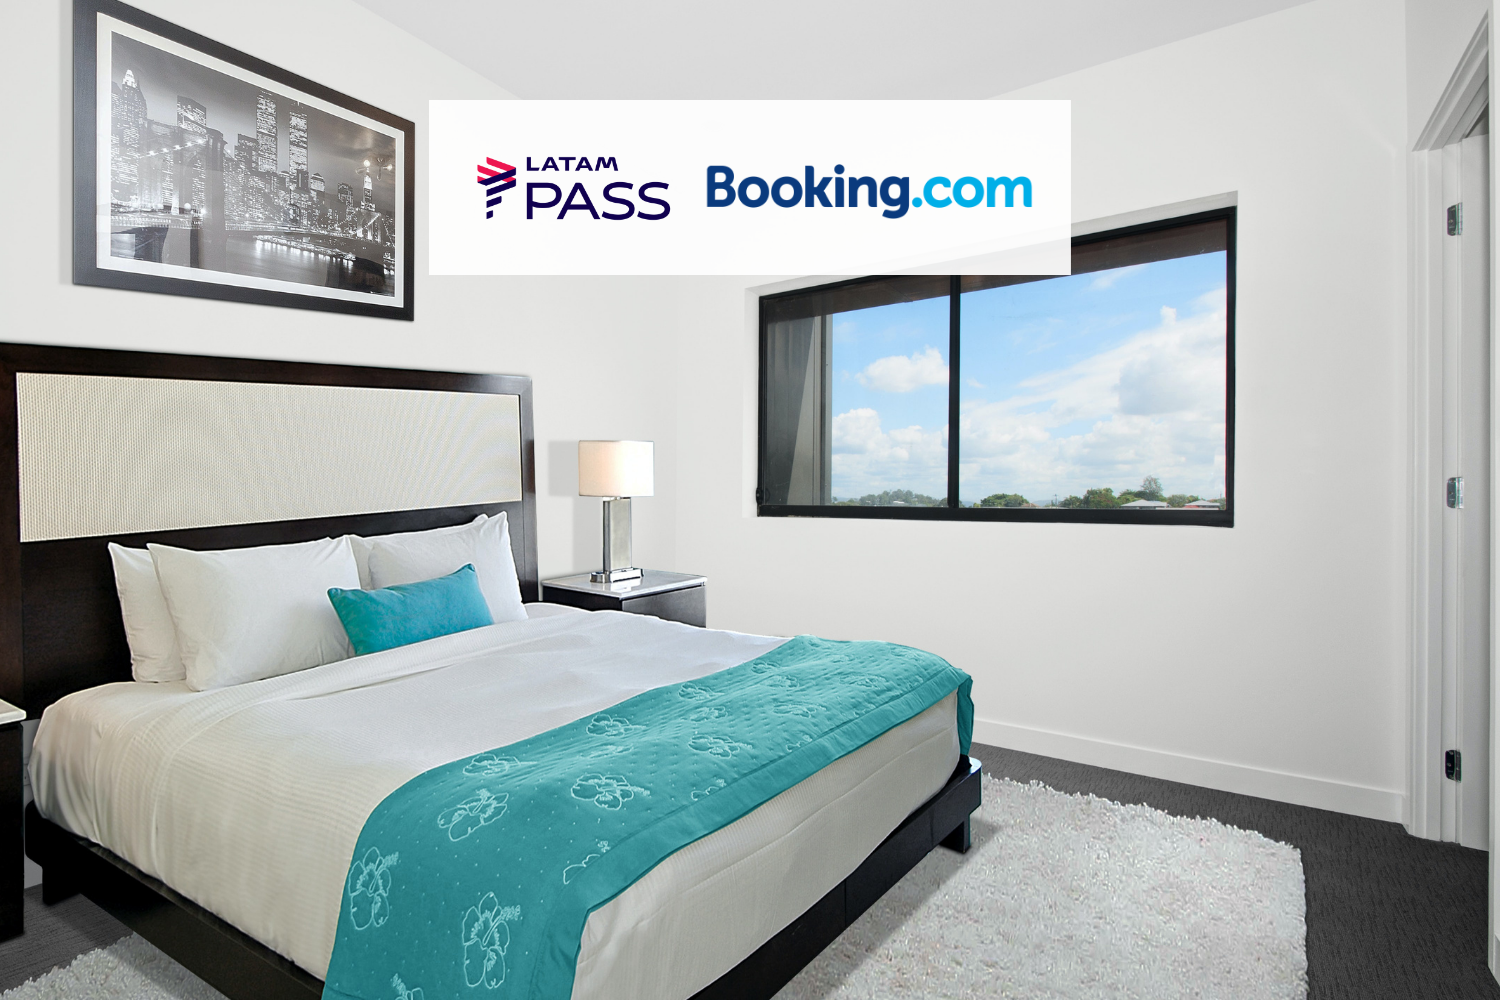 Quarto de hotel com logo Latam Pass e Booking